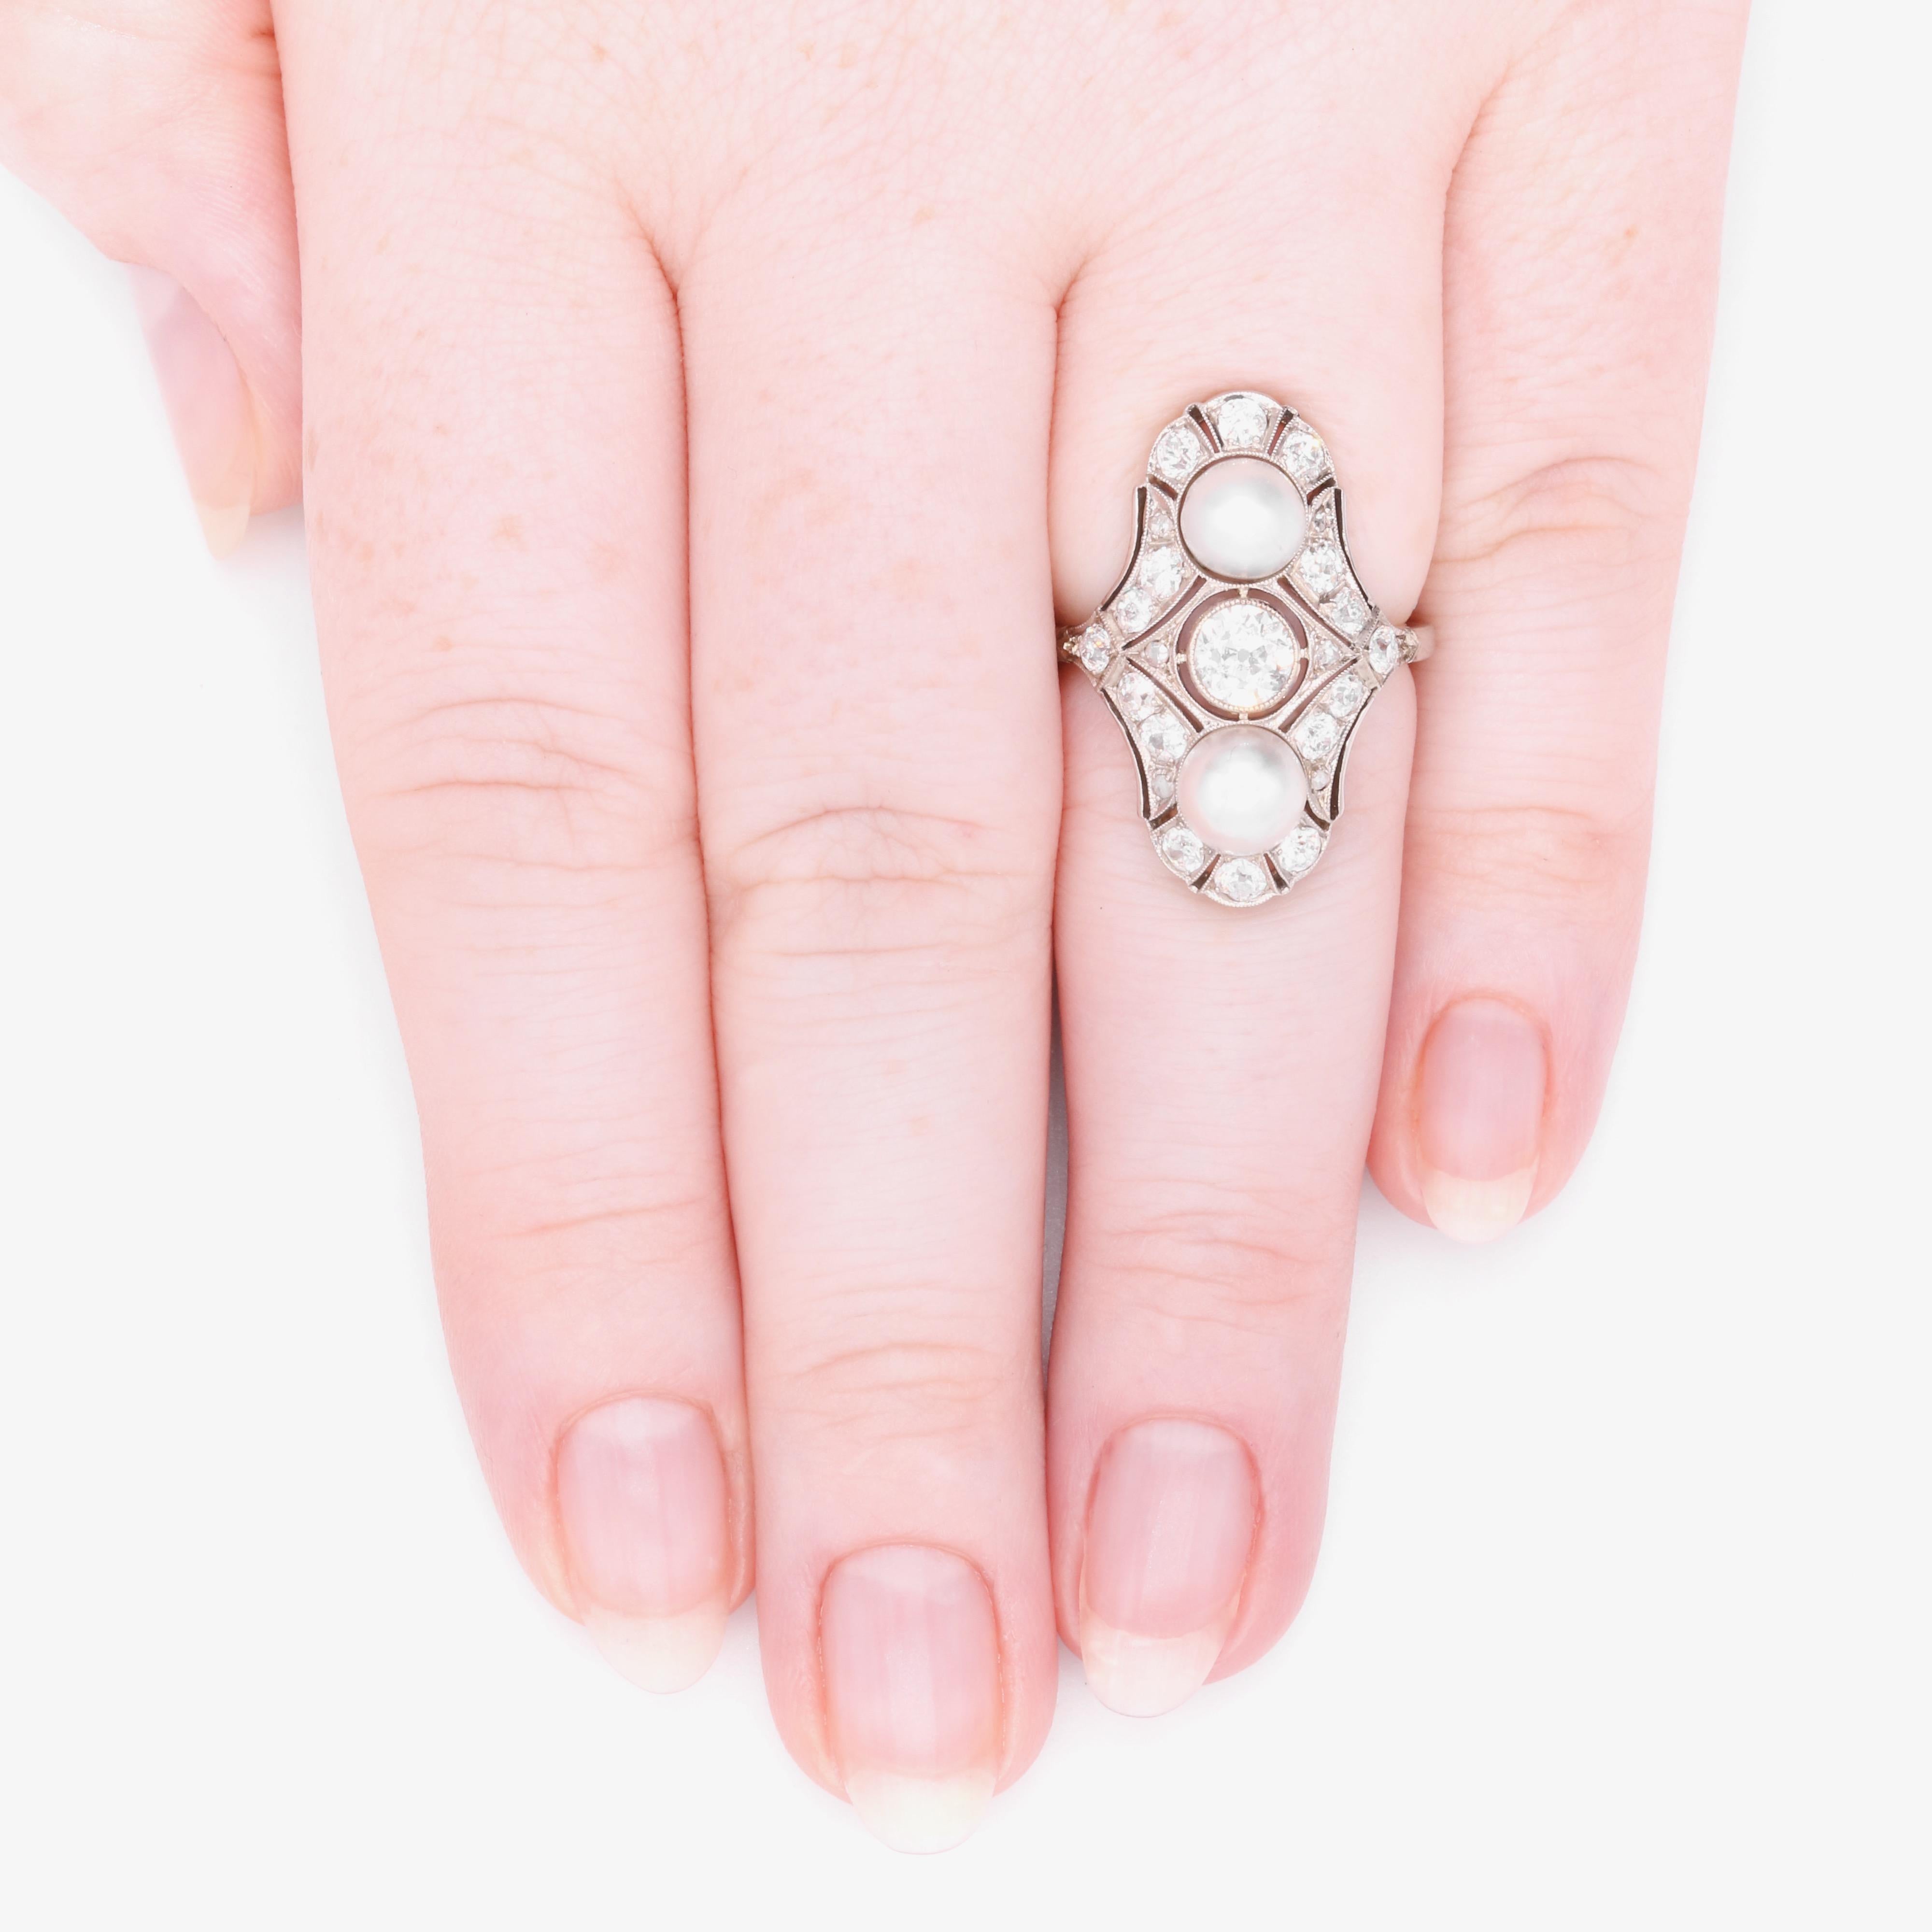 Ein Art-Deco-Ring aus Diamanten, Perlen und Weißgold, bestehend aus einem großen Diamanten mit altem europäischem Schliff, sechzehn kleineren Diamanten mit altem europäischem Schliff und sechs Diamanten mit Rosenschliff, gefasst in 18 Karat